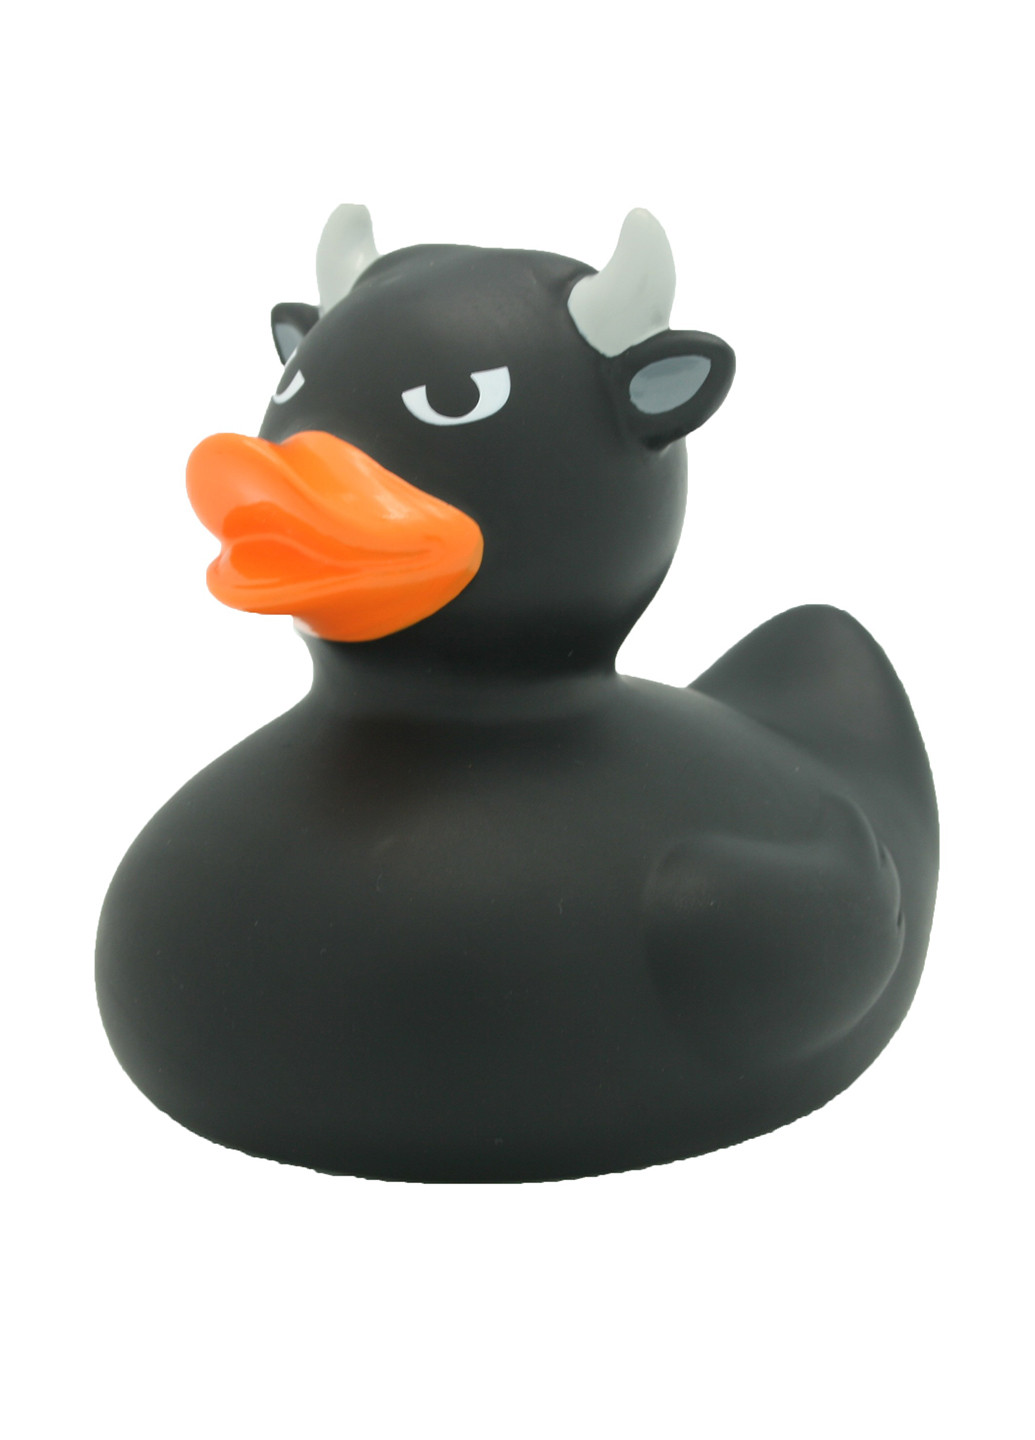 Іграшка для купання Качка Бик, 8,5x8,5x7,5 см Funny Ducks (250618762)